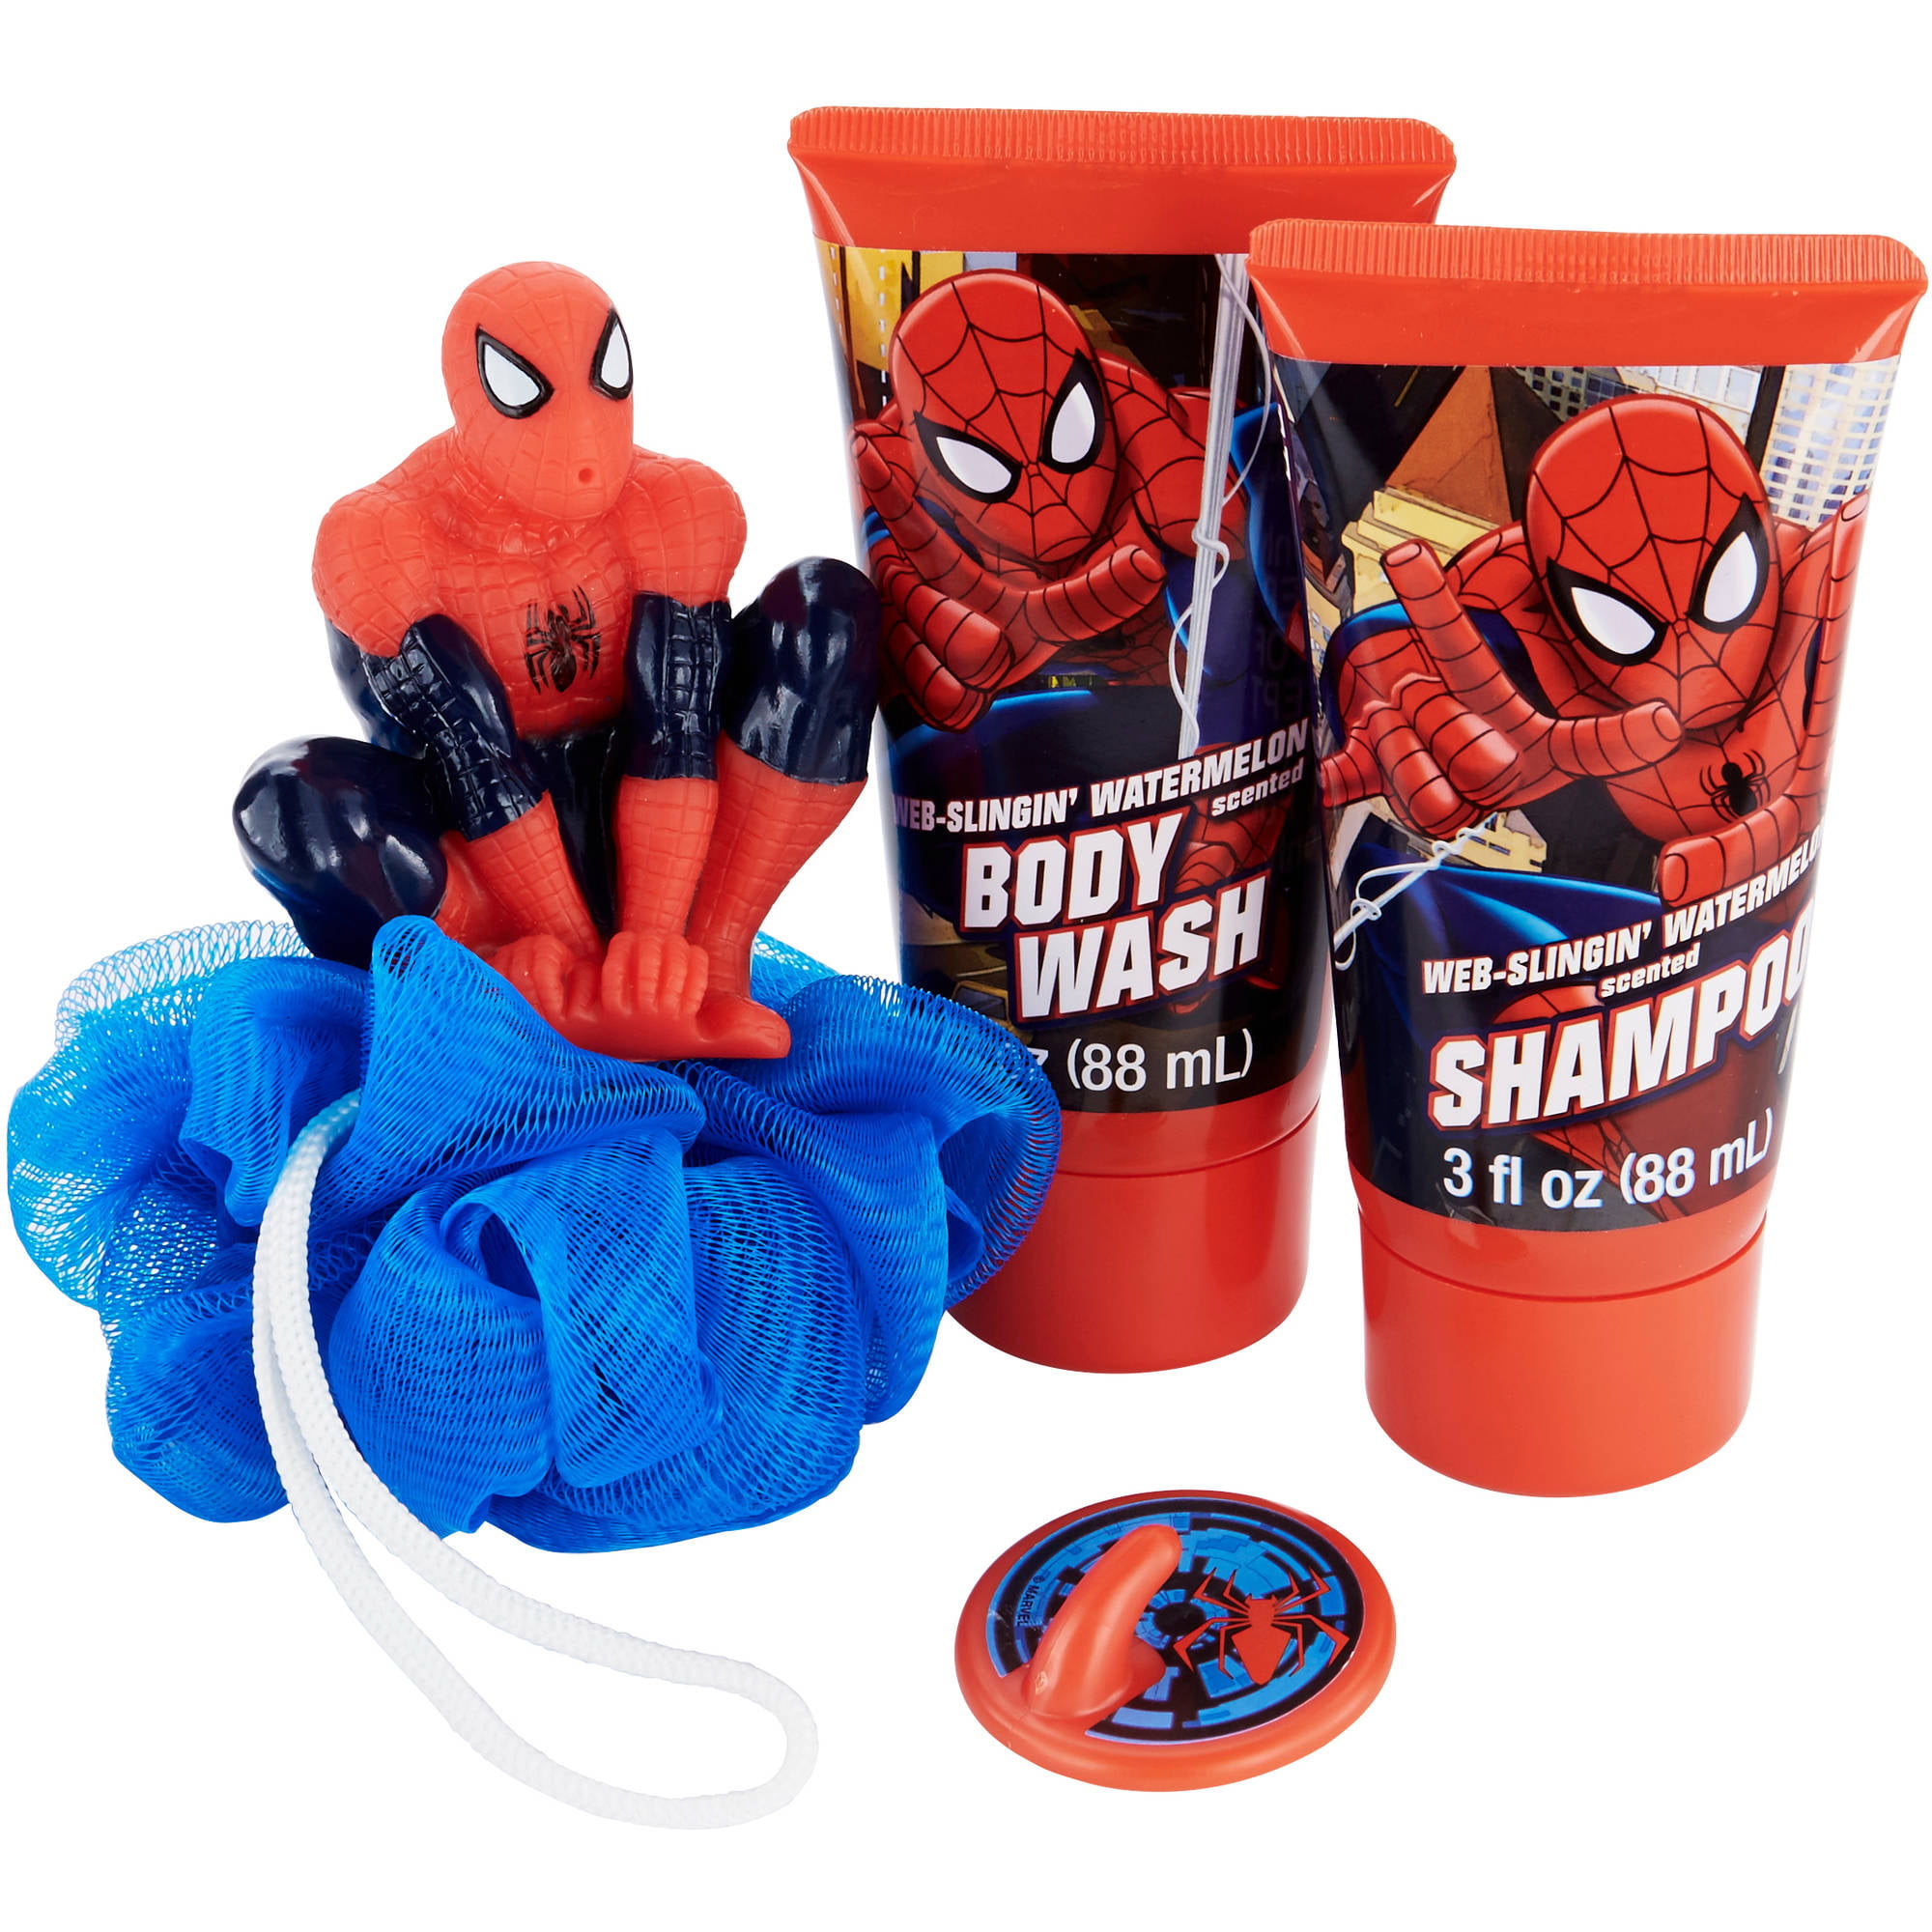 Marvel Spiderman Soap & Scrub NEW Bath Set Shampoo Body Wash Bath